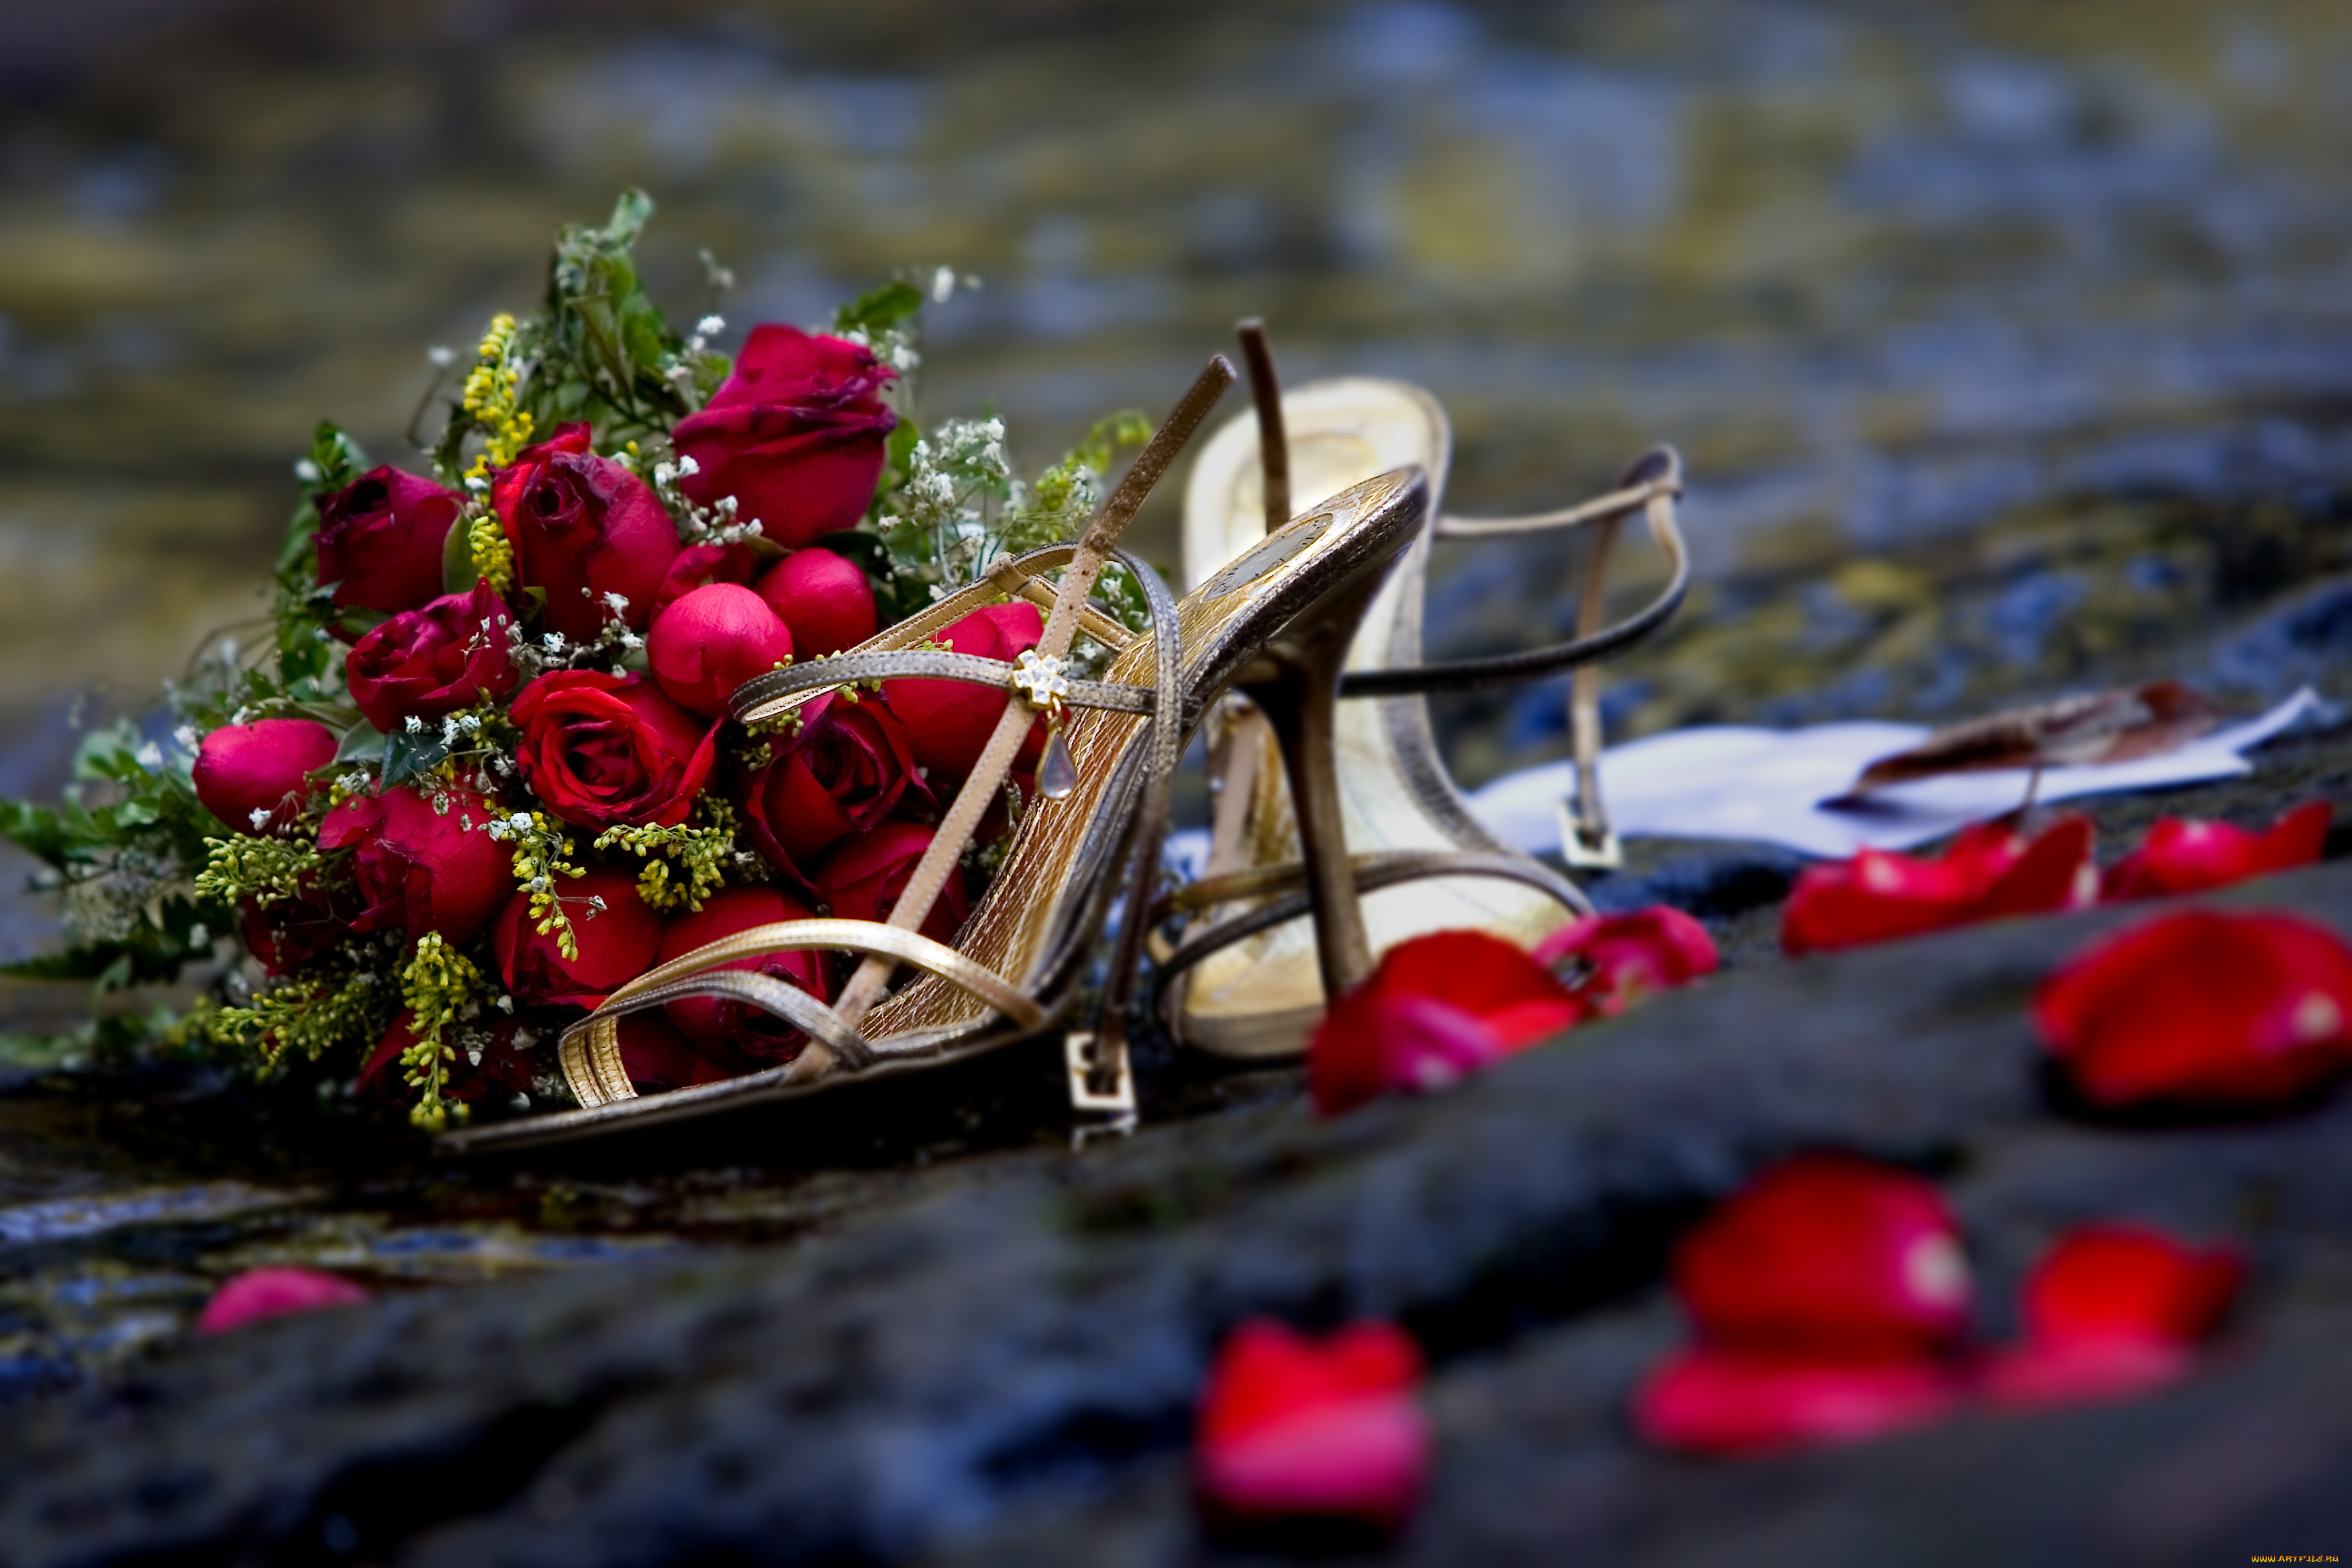 разное, одежда, обувь, текстиль, экипировка, розы, романтика, букет, цветы